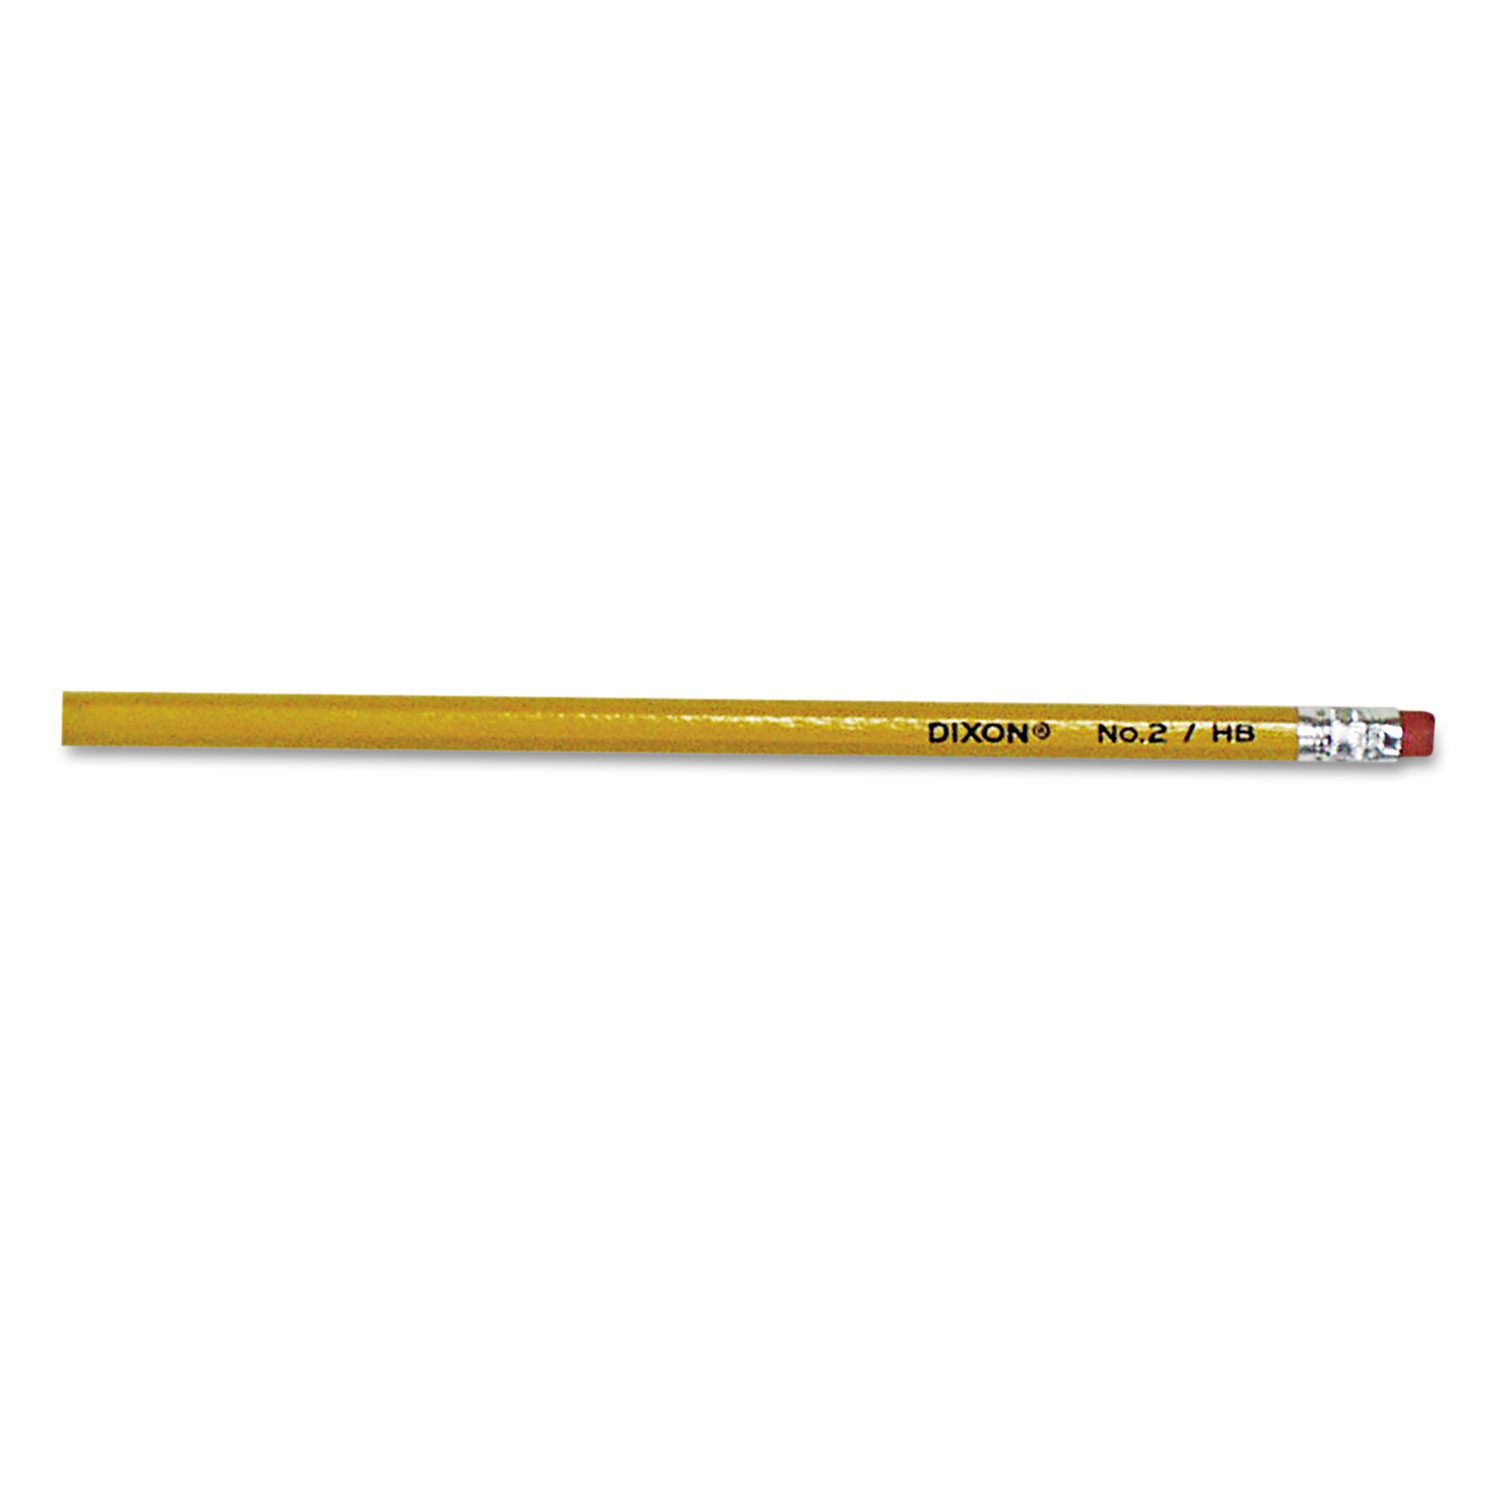 No. 2 Pencil Value Pack, HB (#2), Black Lead, Yellow Barrel, 144/Box